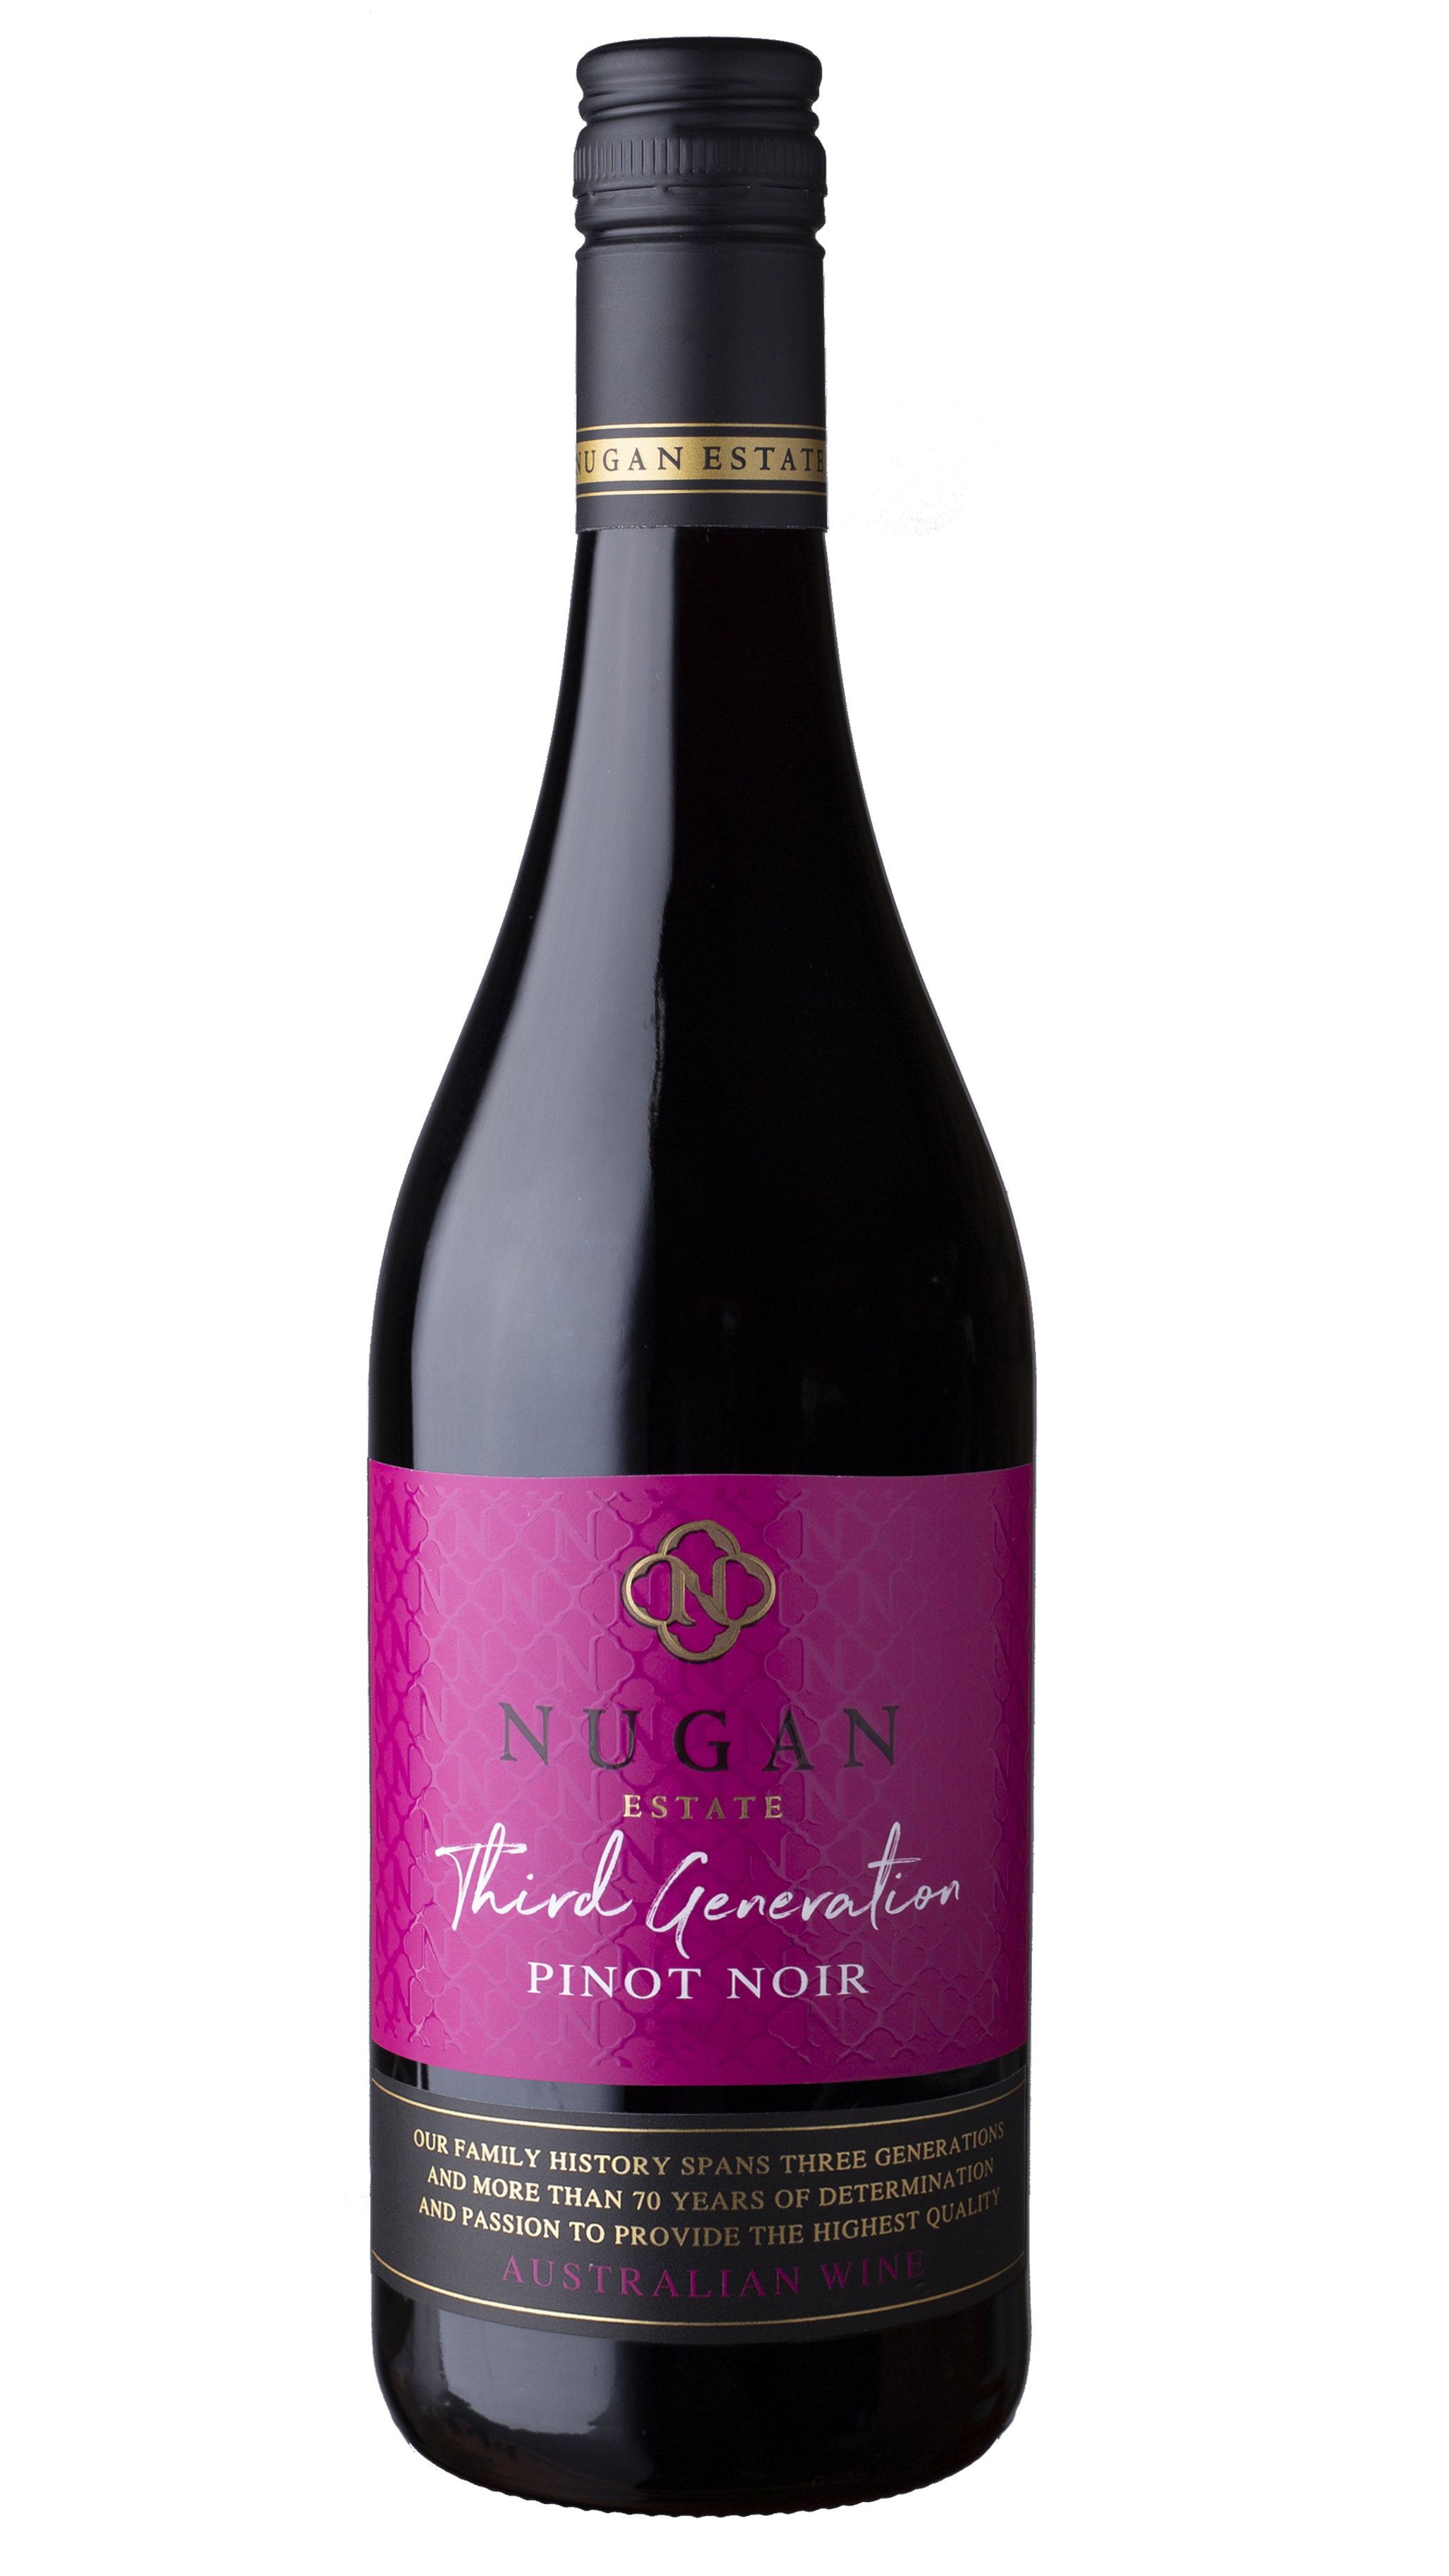 68945 Nugan Estate Third Generation Pinot Noir 0,75 liter